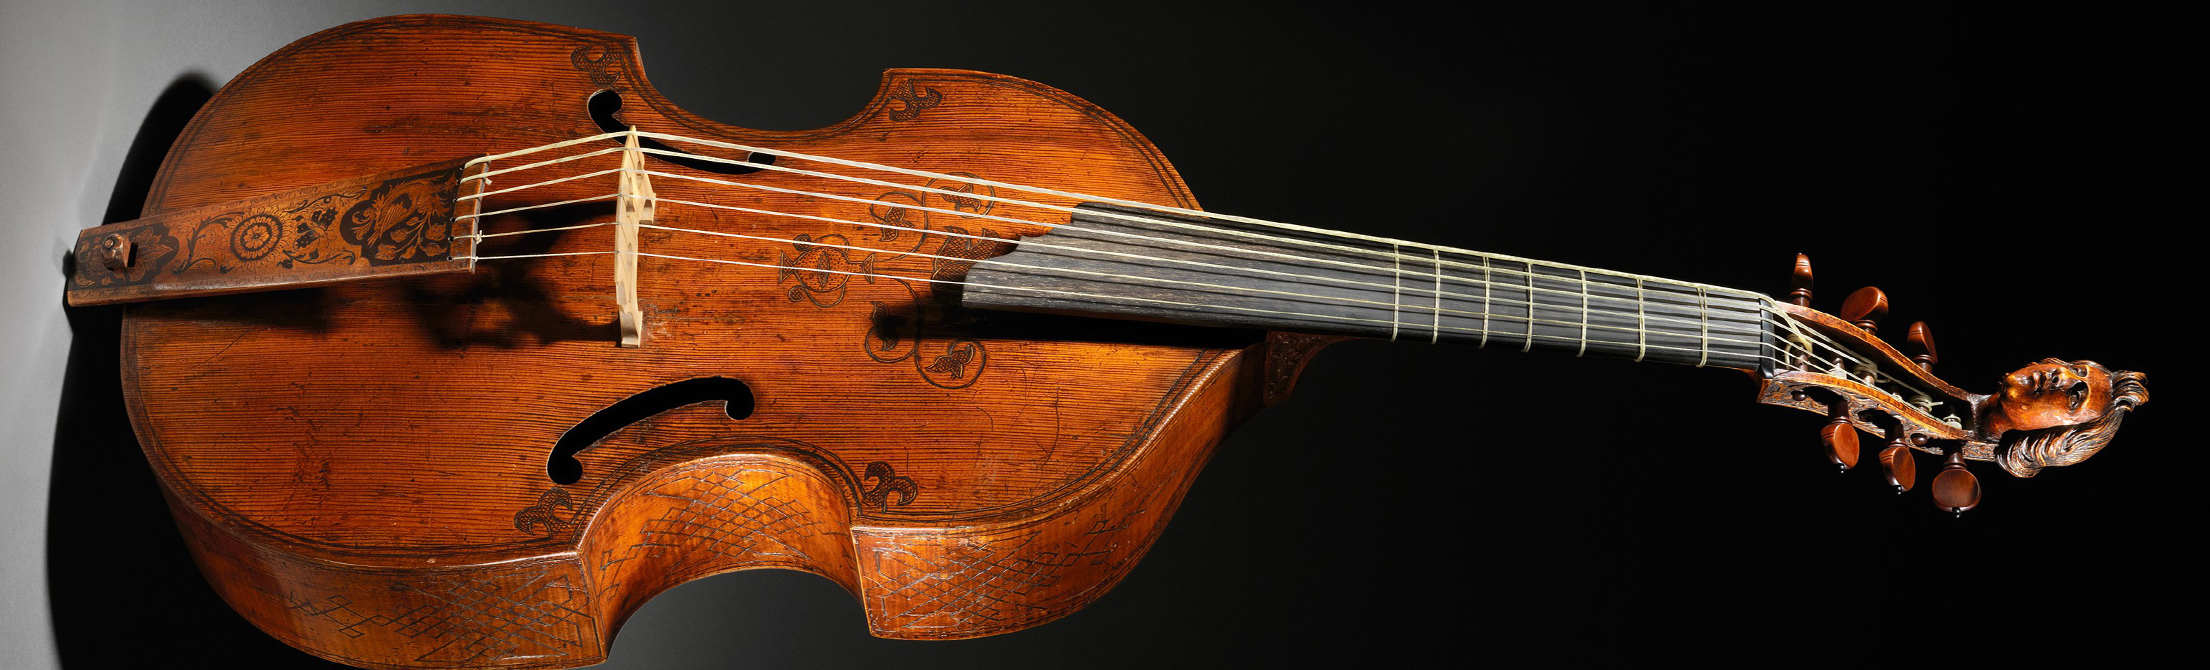 Photo of a viola da gamba